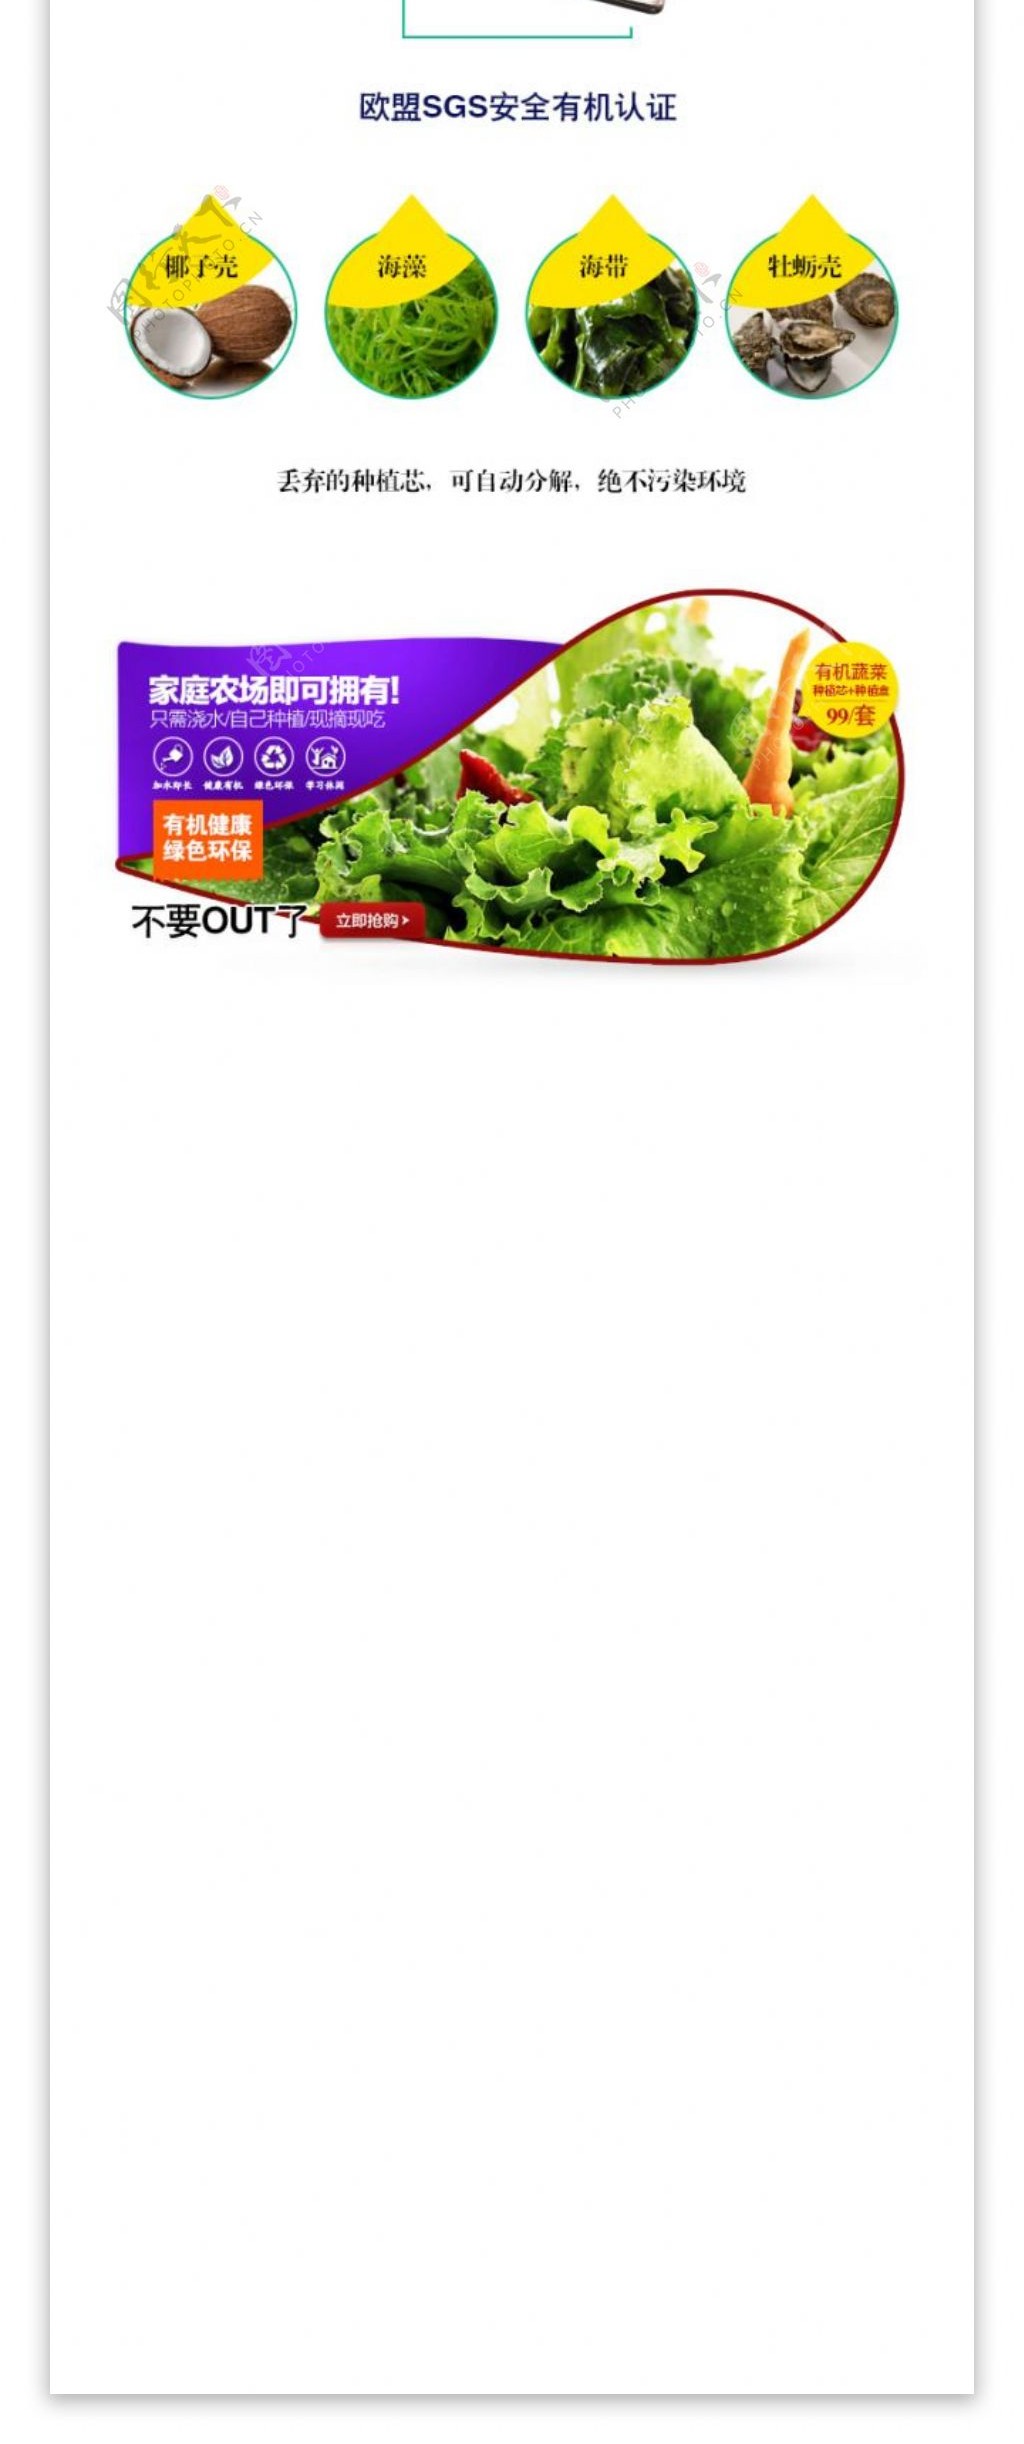 生菜有机蔬菜种植盒产品描述